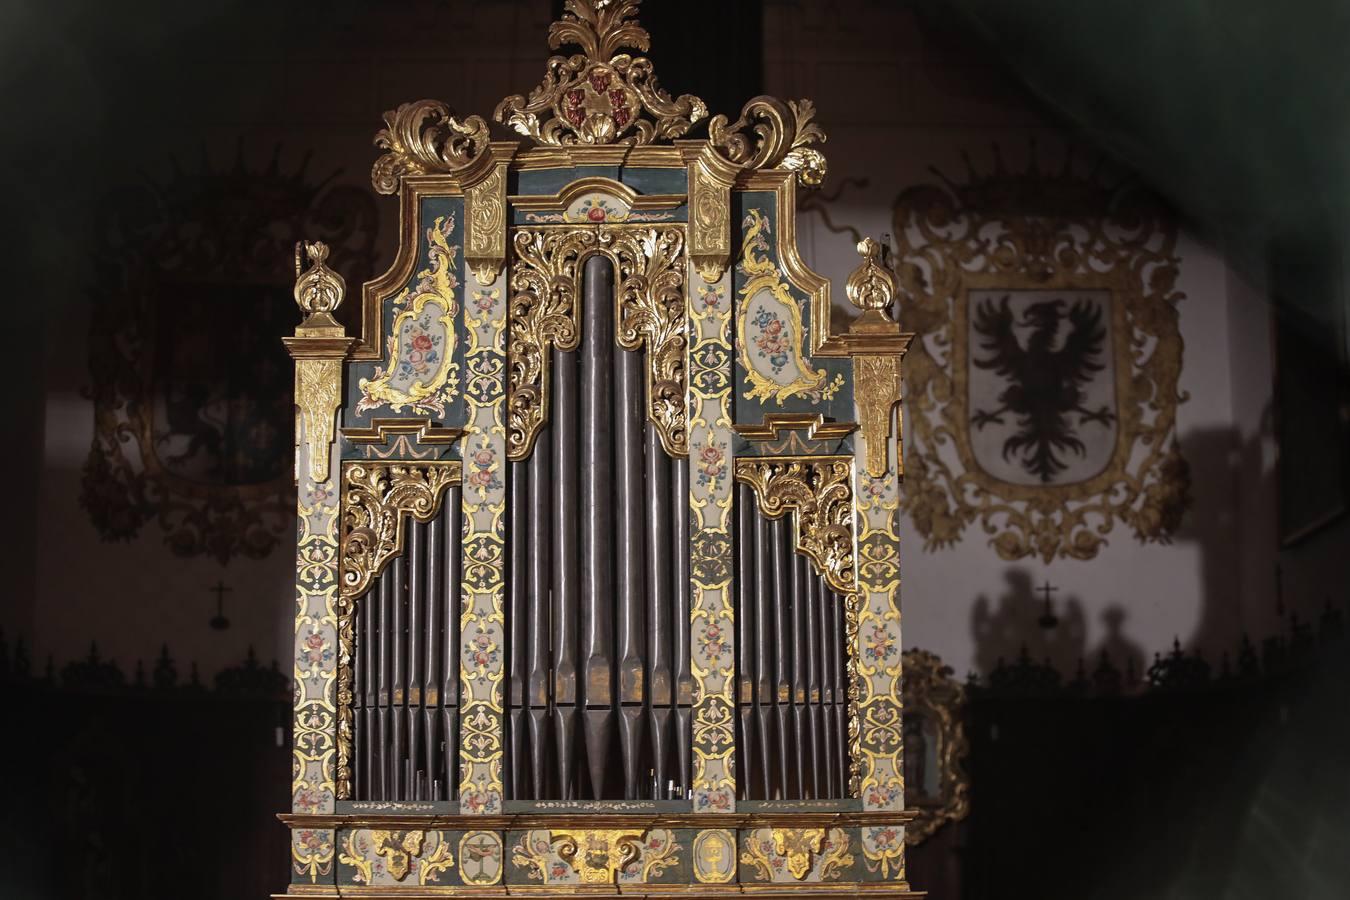 Órgano de la Iglesia del Convento de Santa Inés, donde Becquer situó la trama del Maese Pérez «El organista», una de sus célebres leyendas